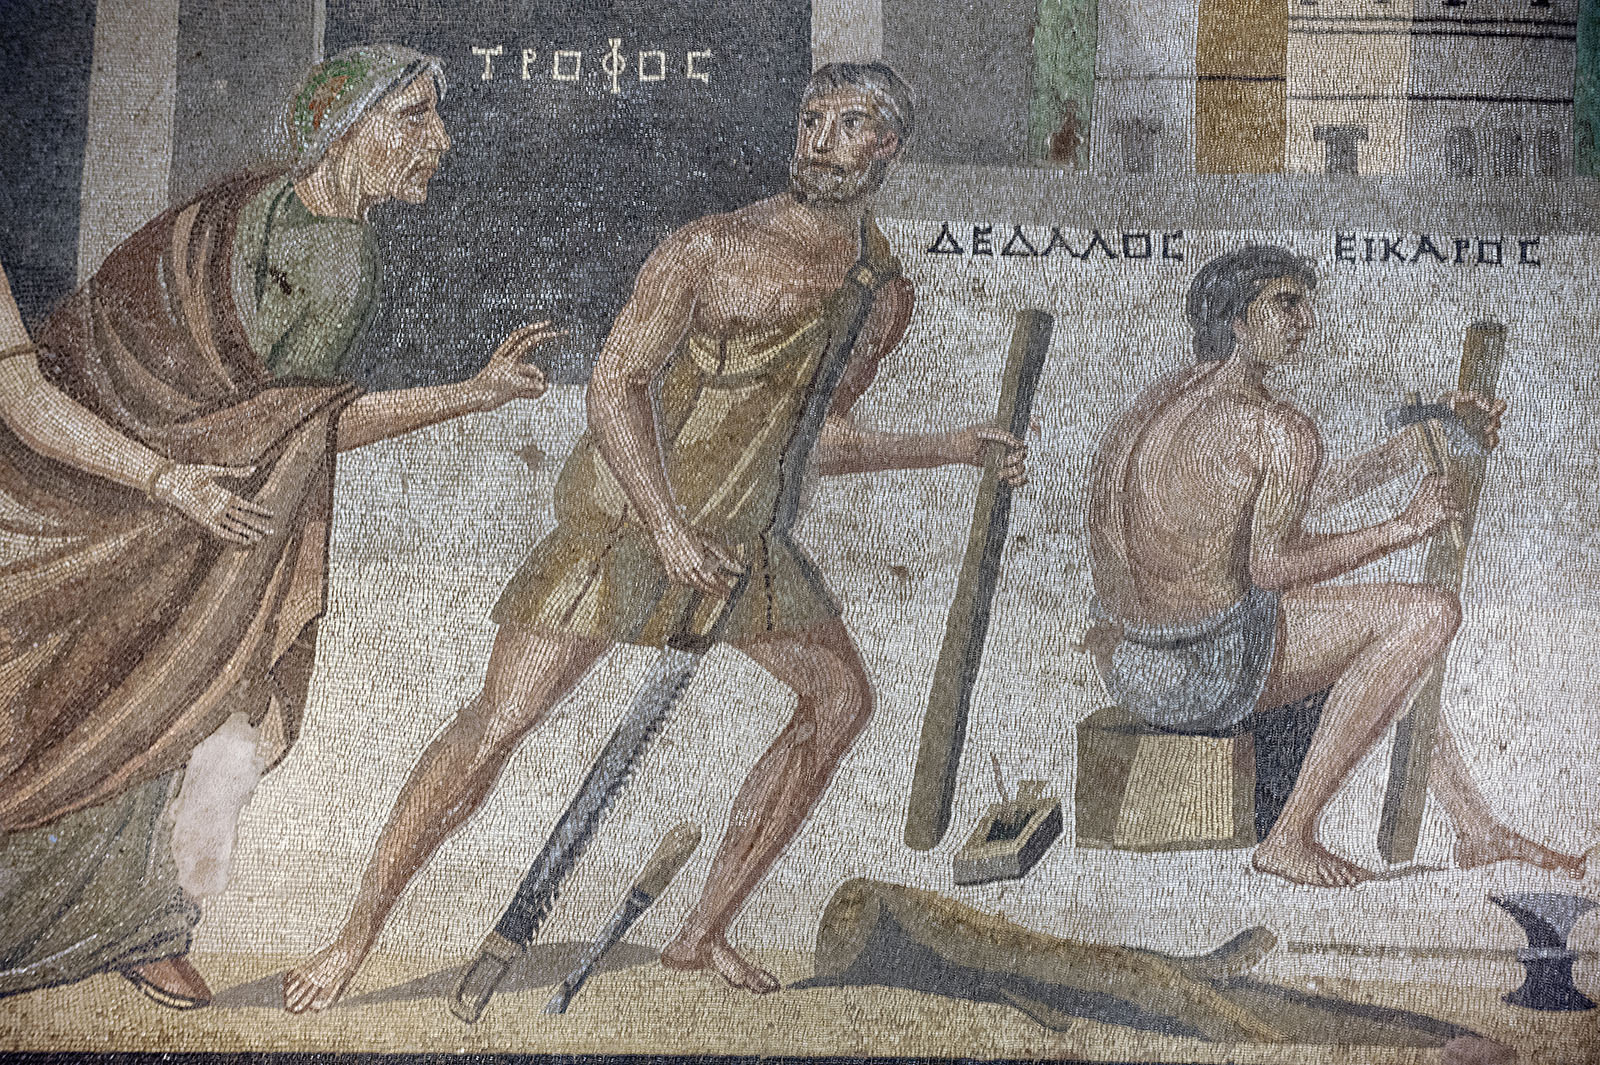 Дедал: Ежелгі грек проблемасын шешуші